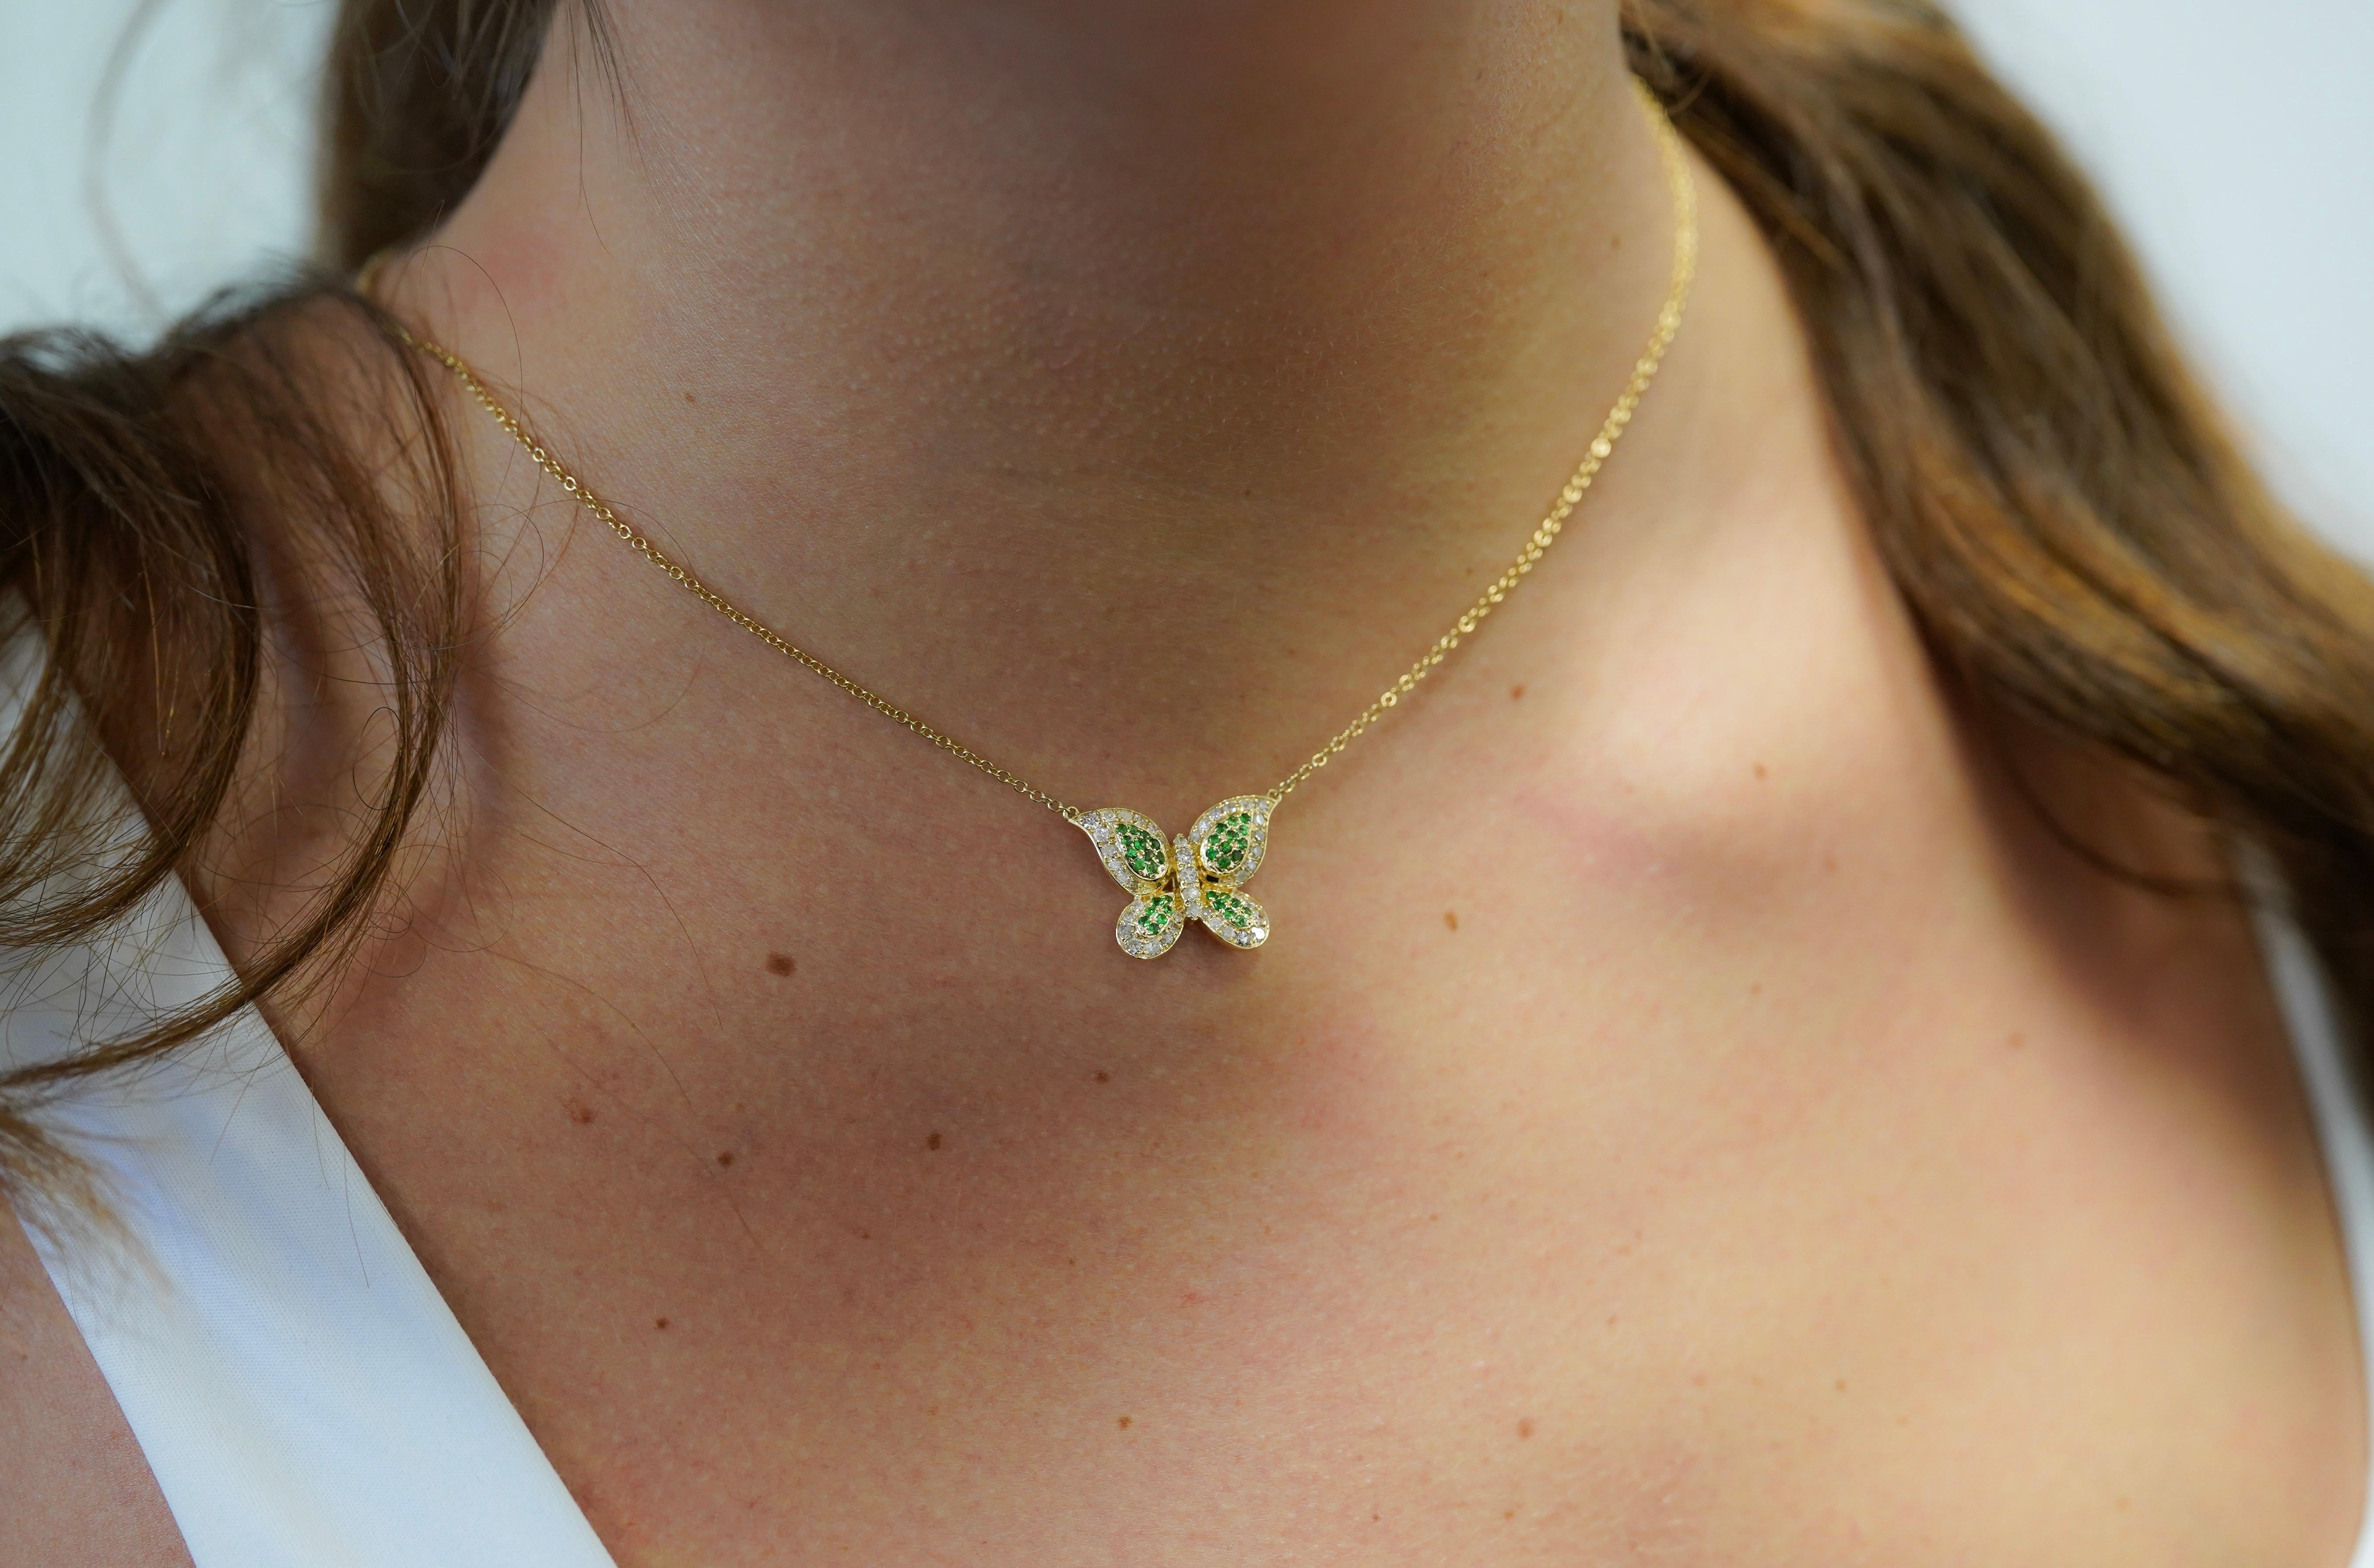 Nous vous présentons notre superbe collier pendentif à motif papillon en tsavorite verte naturelle et diamant, délicatement enveloppé dans l'éclat radieux de l'or jaune 14 carats.

Ce pendentif met en valeur de vibrantes ailes de tsavorite verte de